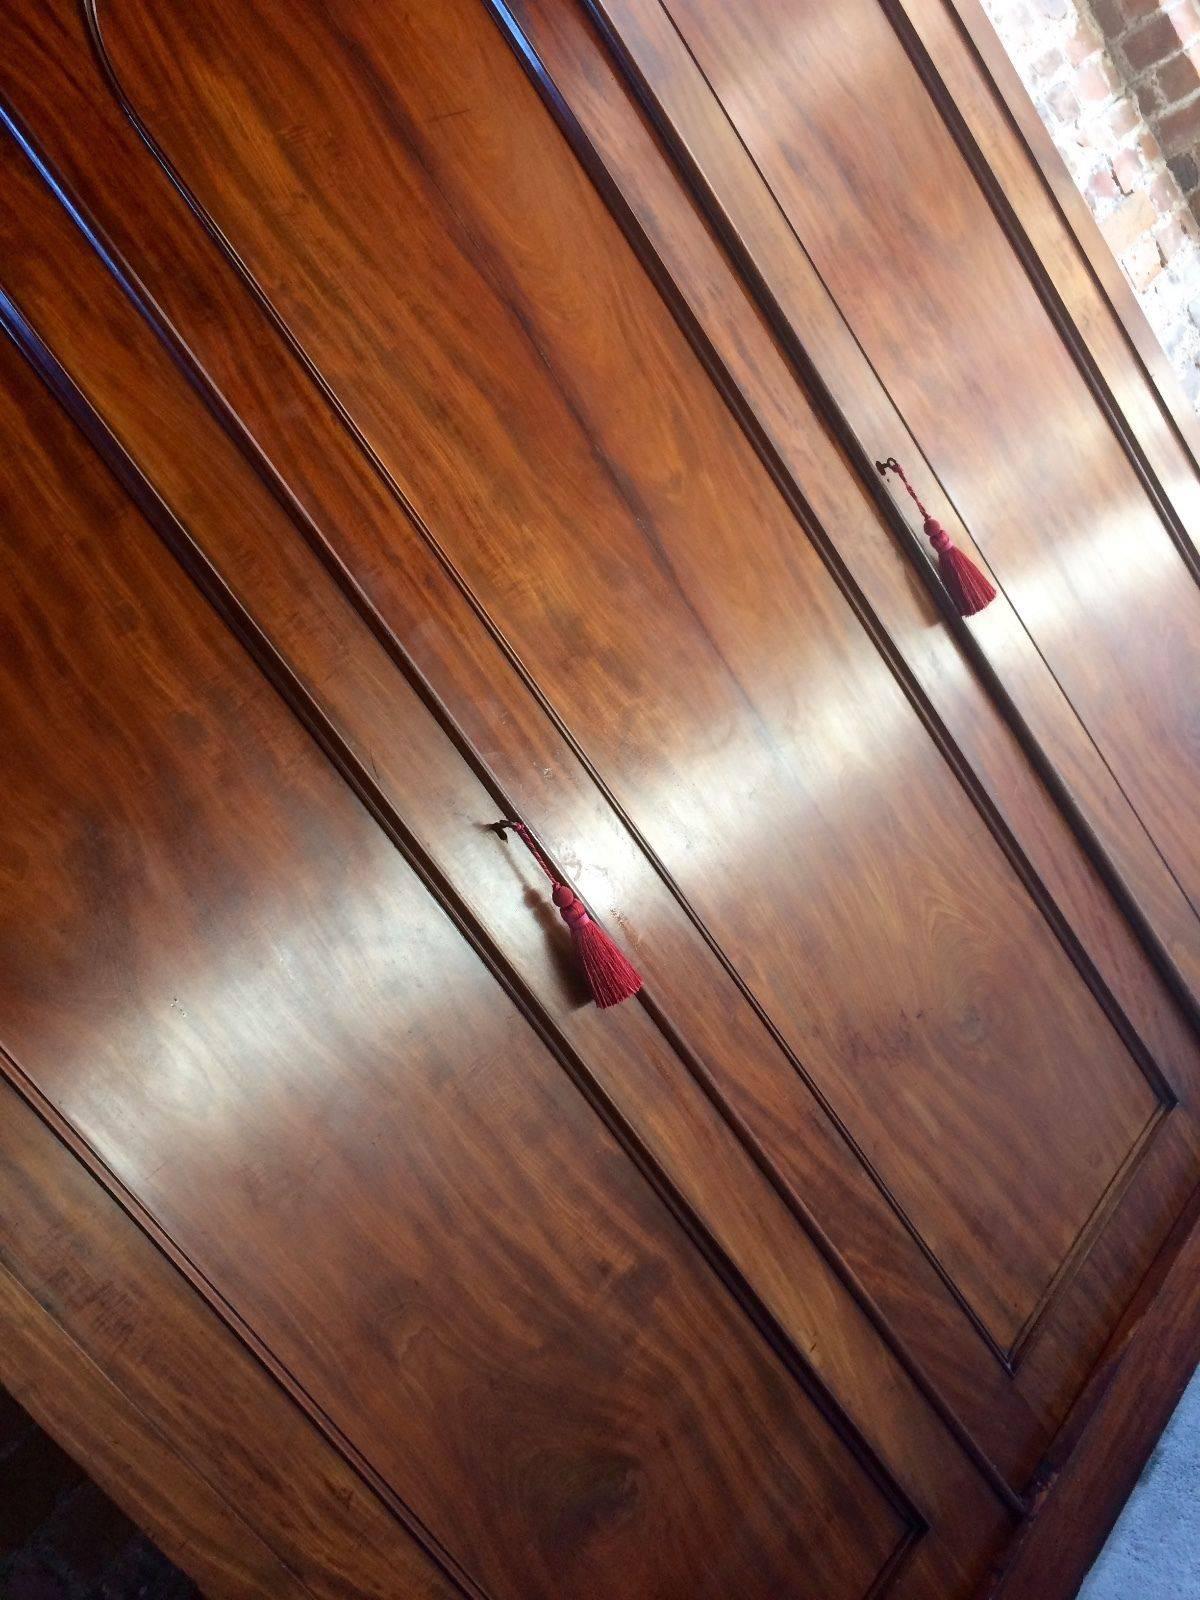 large mahogany wardrobe